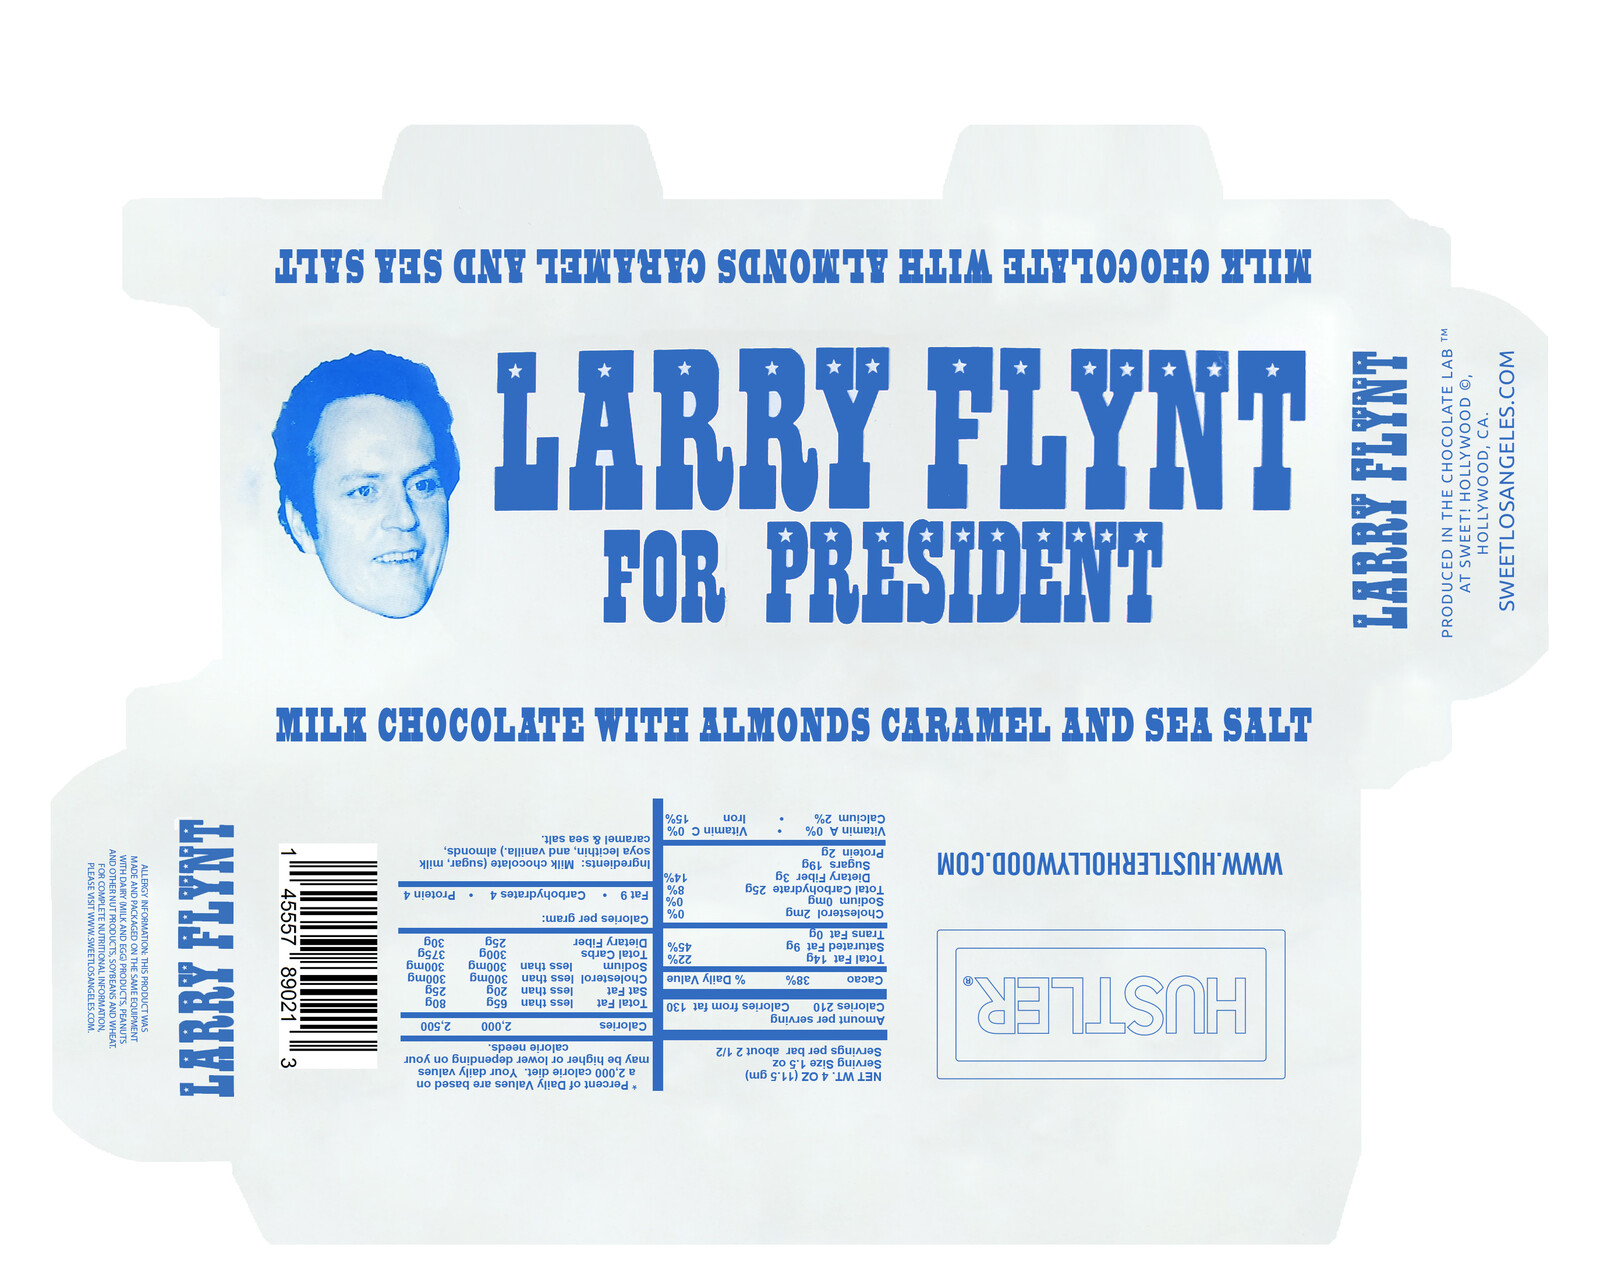 Hustler Larry flint for president